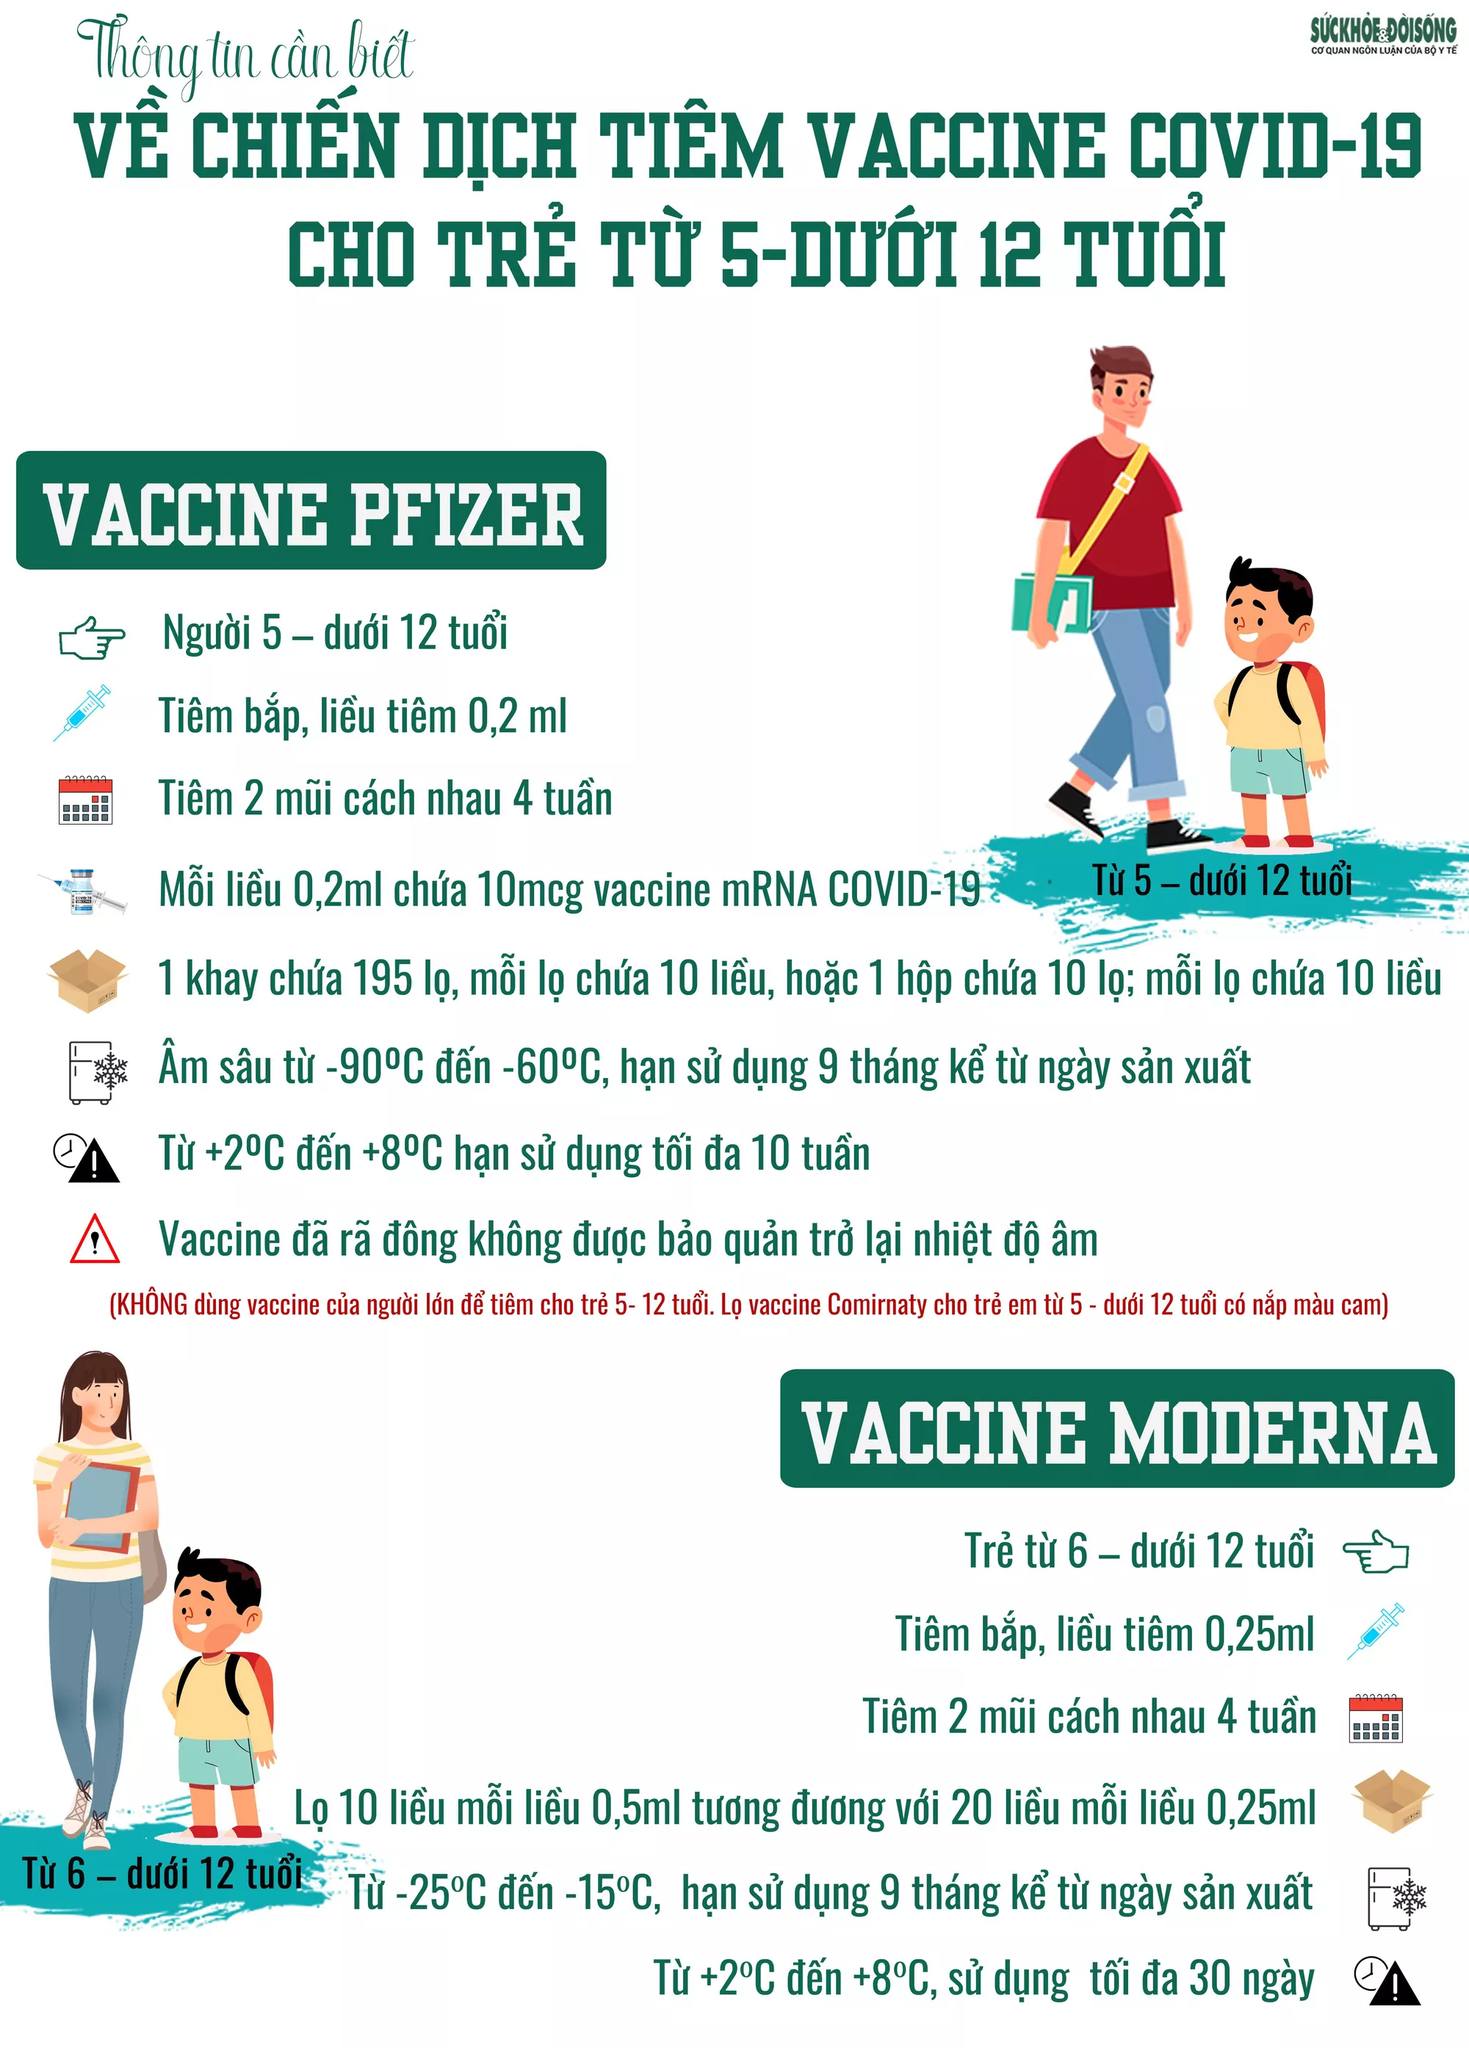 Tất cả thông tin về 2 loại vaccine phòng COVID-19 sẽ tiêm cho trẻ từ 5 - dưới 12 tuổi, phụ huynh cần biết